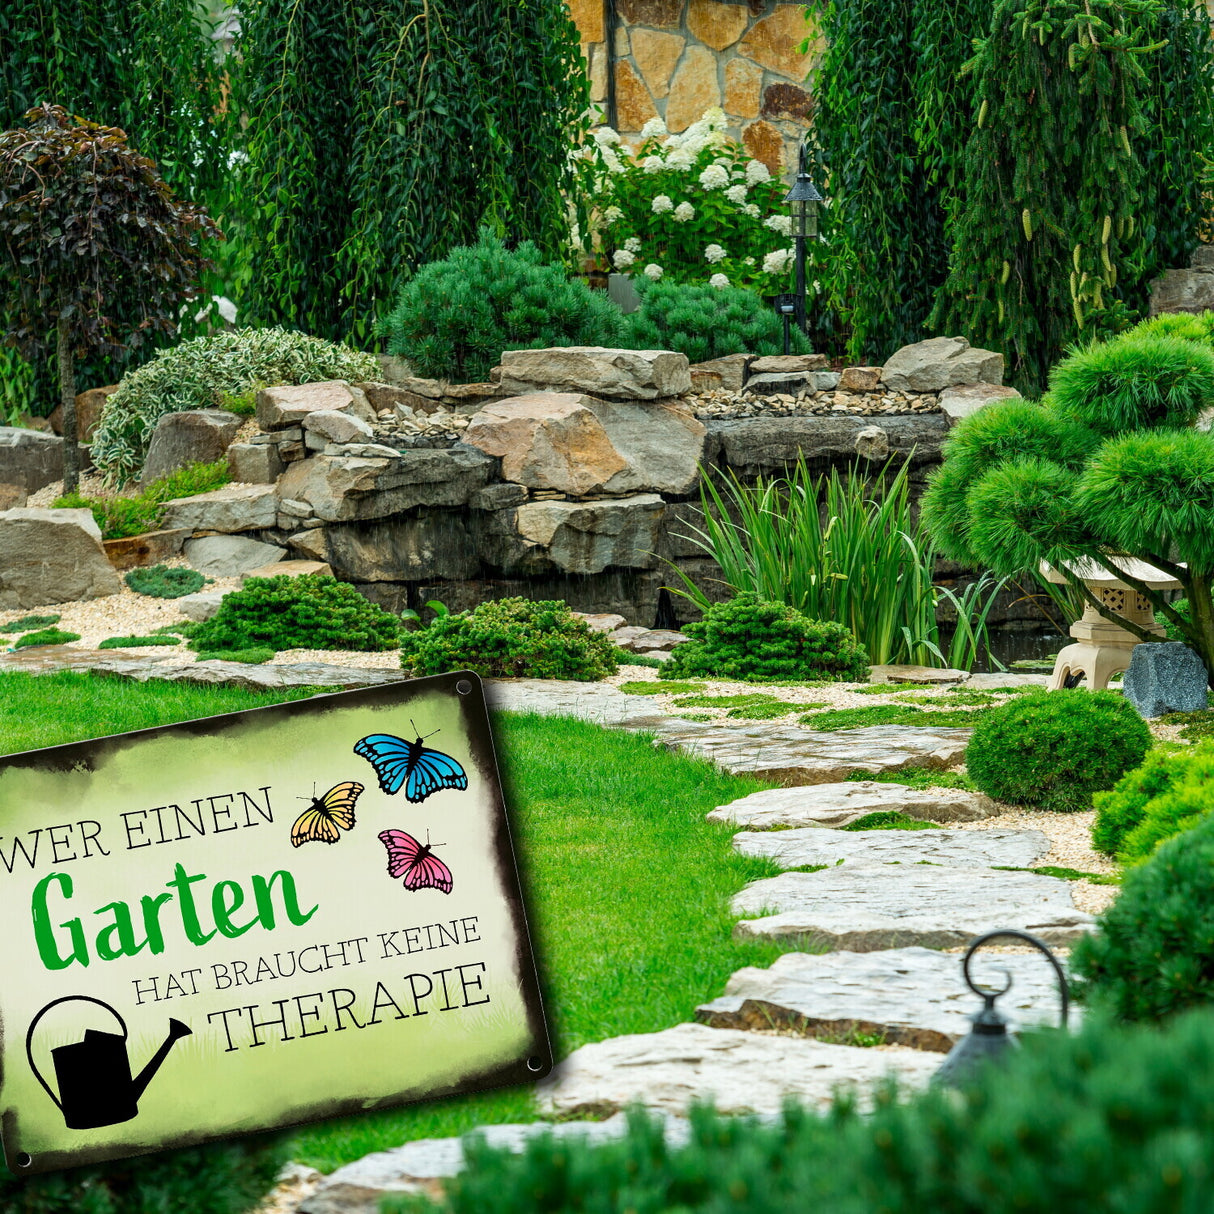 Wer einen Garten hat braucht keine Therapie Metallschild für den Garten